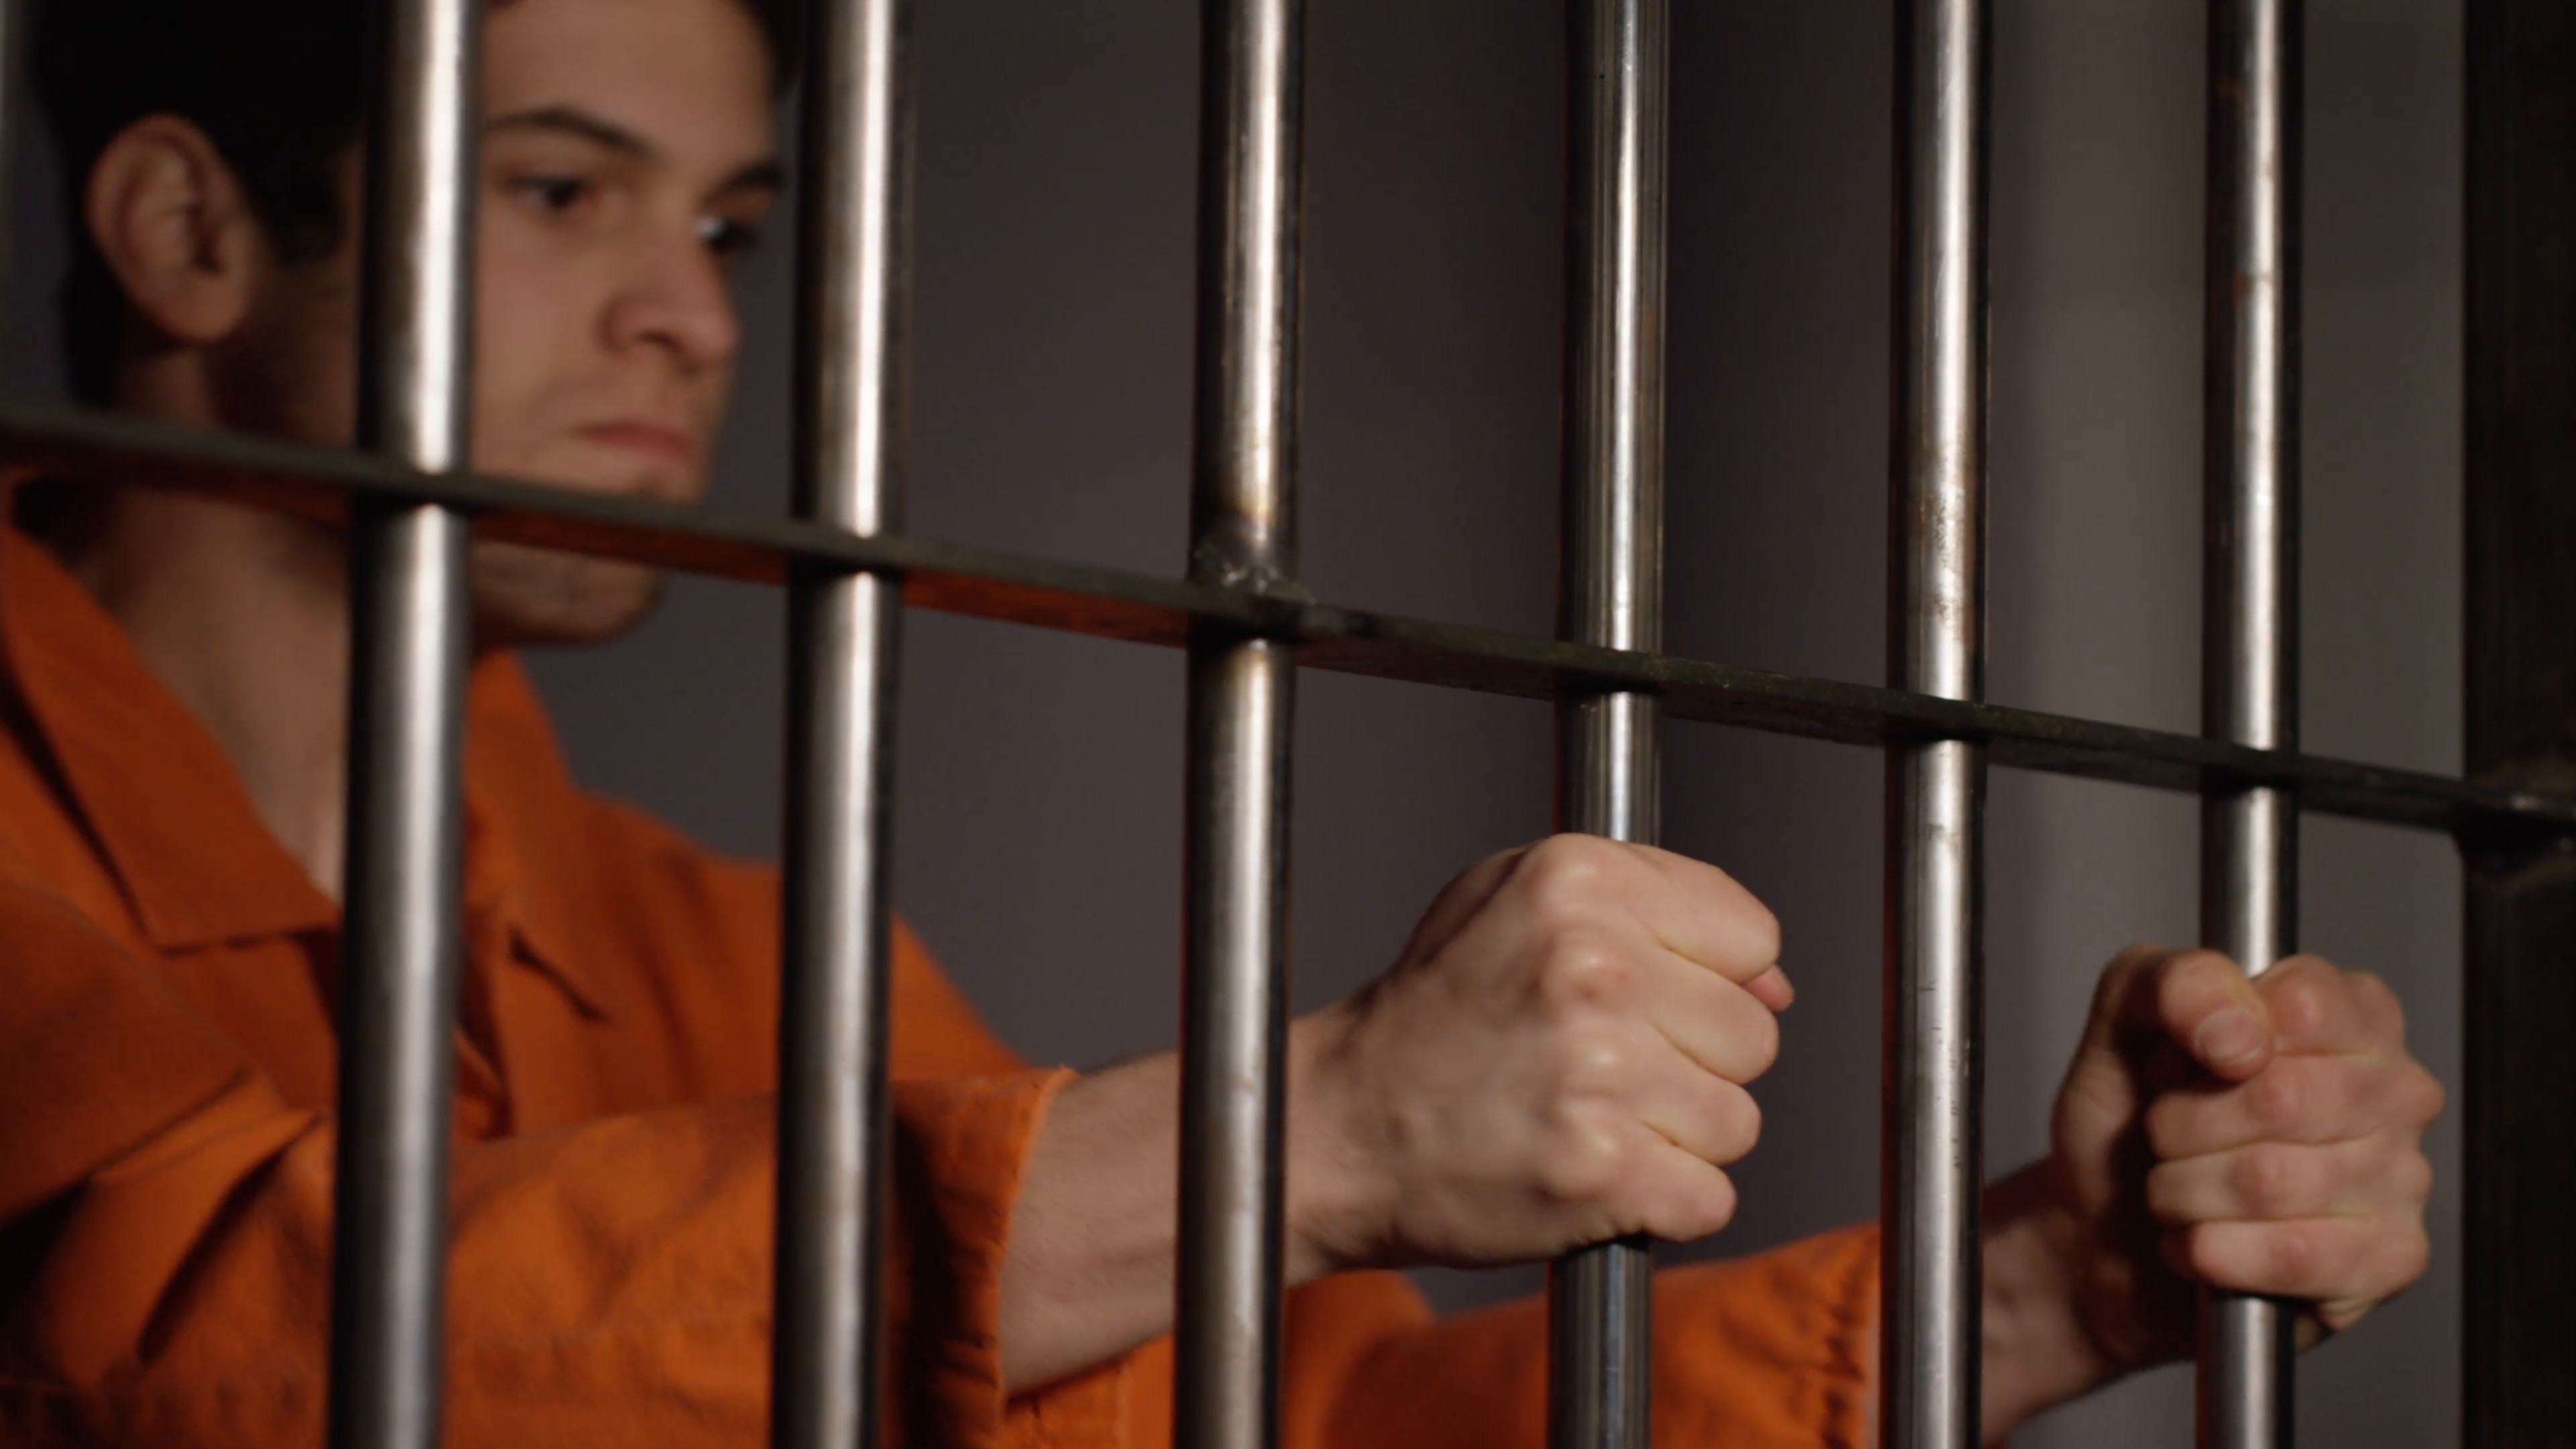 3840x2160 Prison cells in Jail - Man in orange jumpsuit - inmate behind bars Stock  Video Footage - VideoBlocks